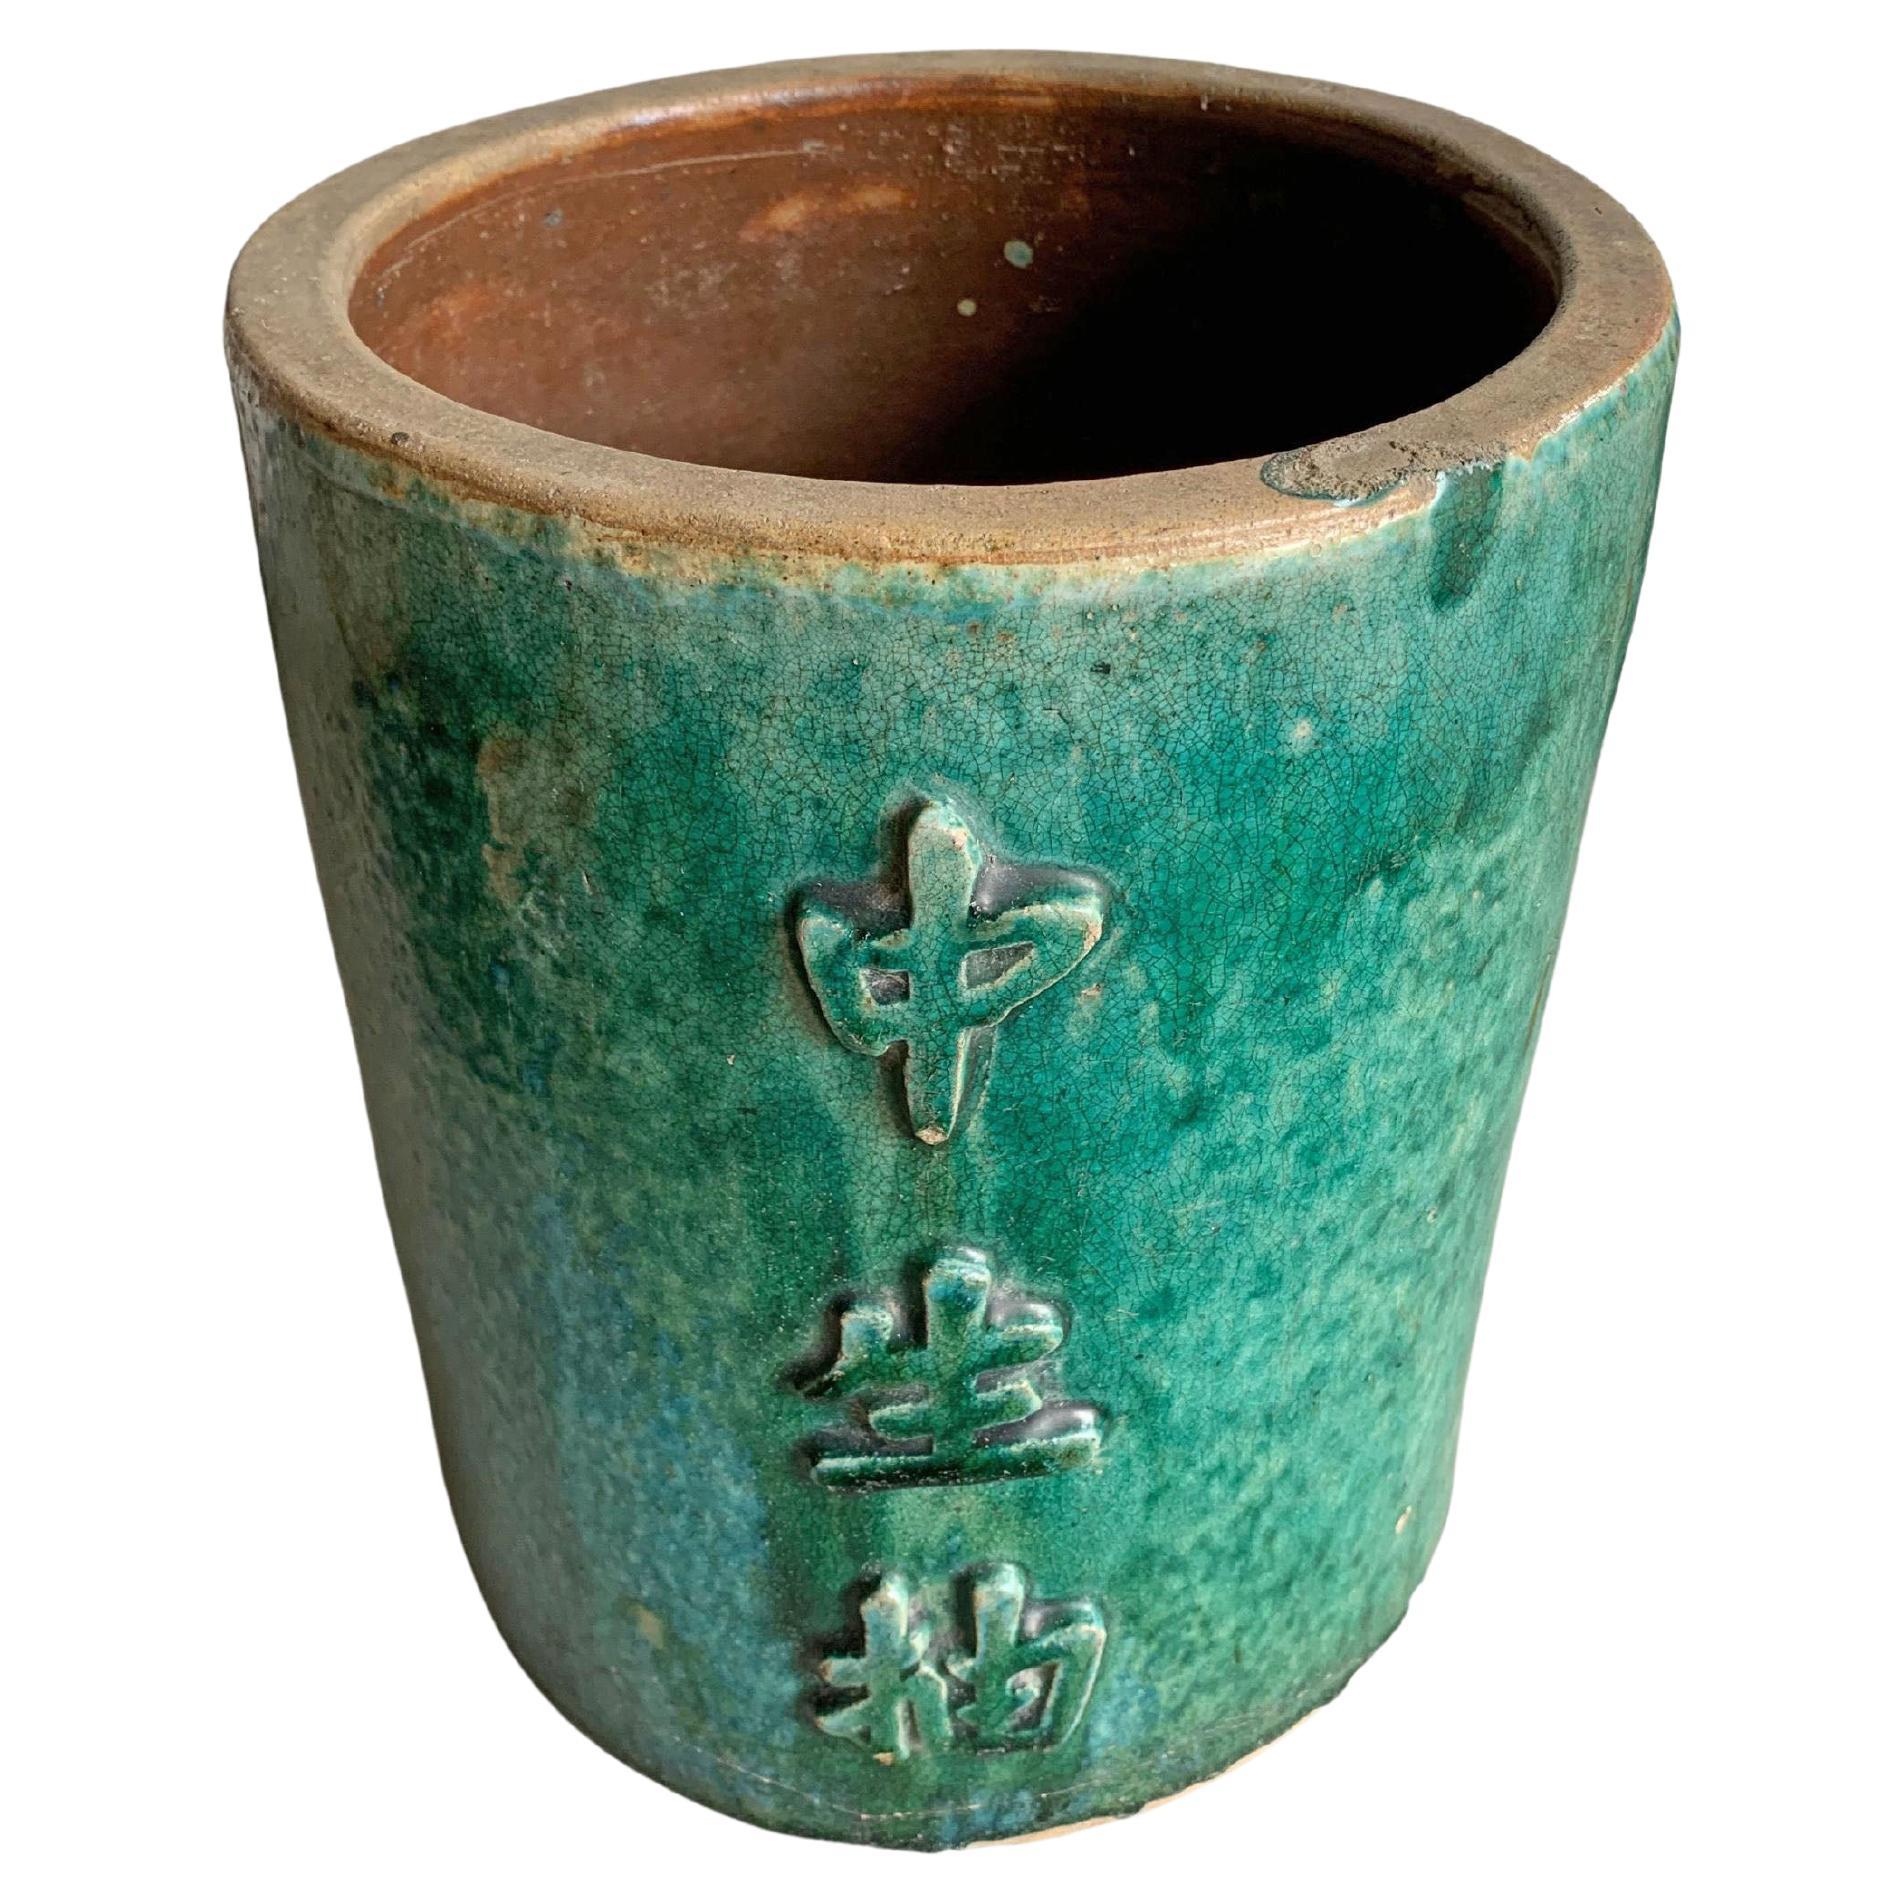 Pot de rangement / jardinière pour saucière chinoise en céramique émaillée verte, vers 1900